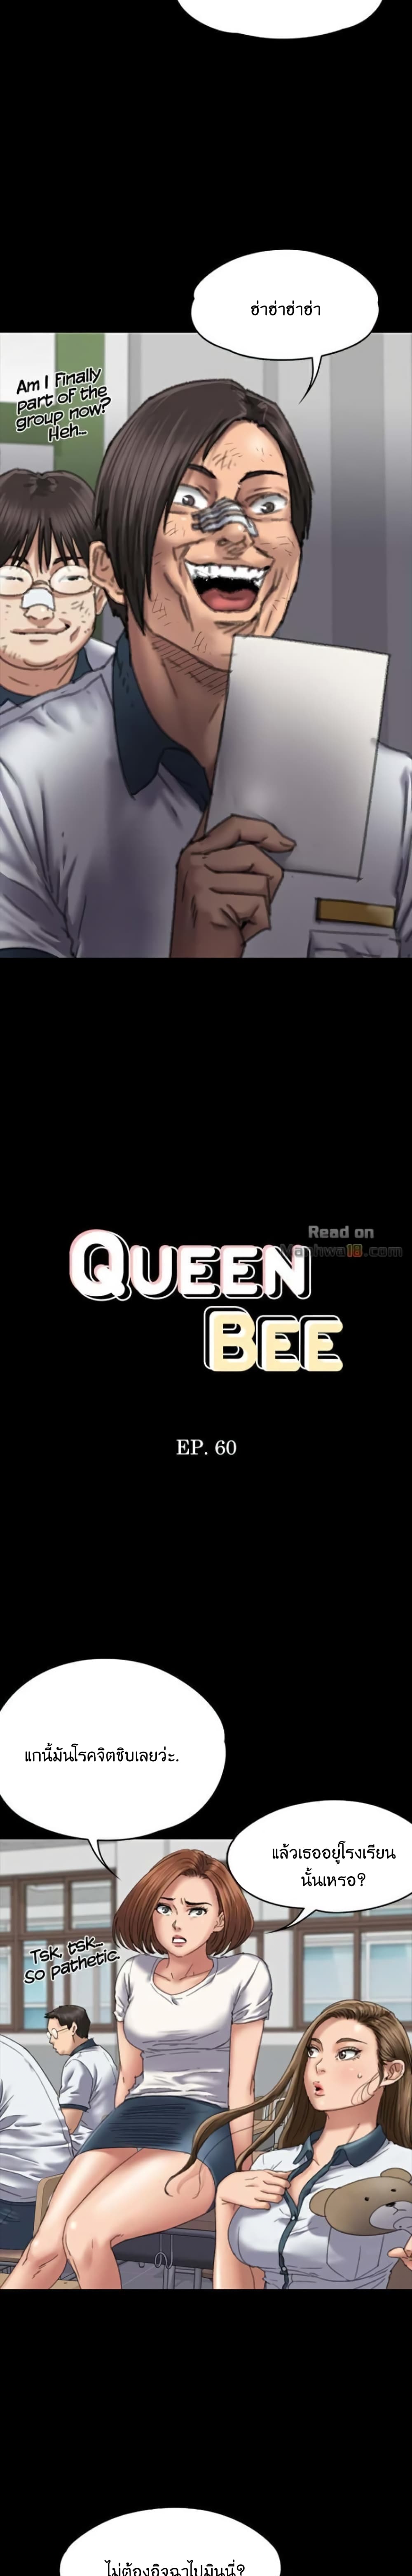 Queen Bee 60-60